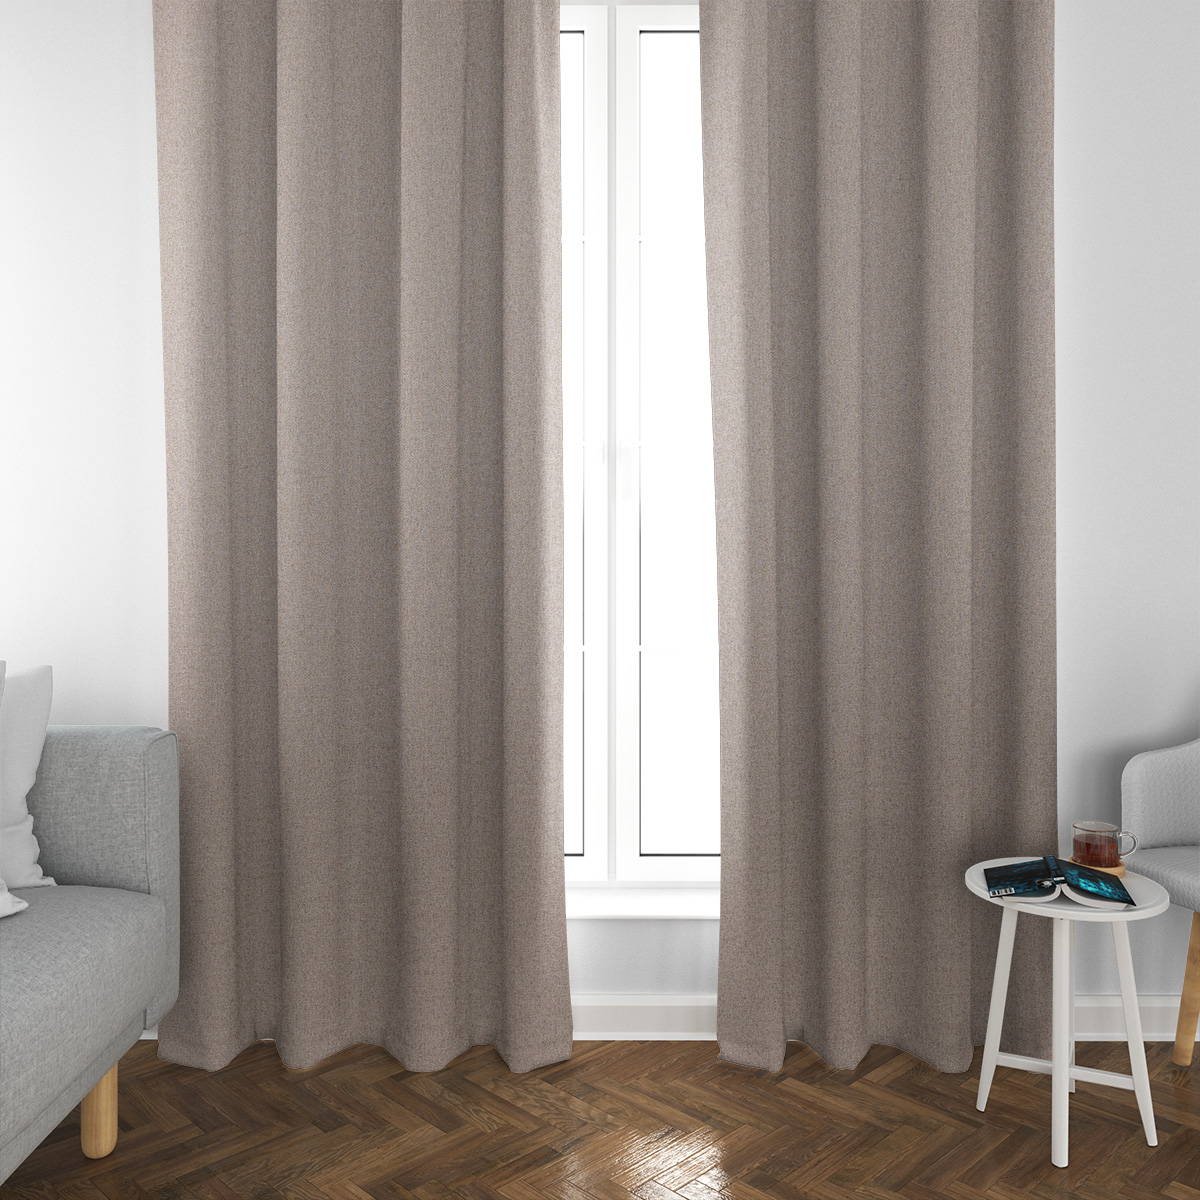 Kaufe Kleiner Vorhang, hochpräzise Verdunkelung, maximiert die Privatsphäre,  Temperaturregulierung, UV-beständige Badezimmer-Fensterabdeckungen